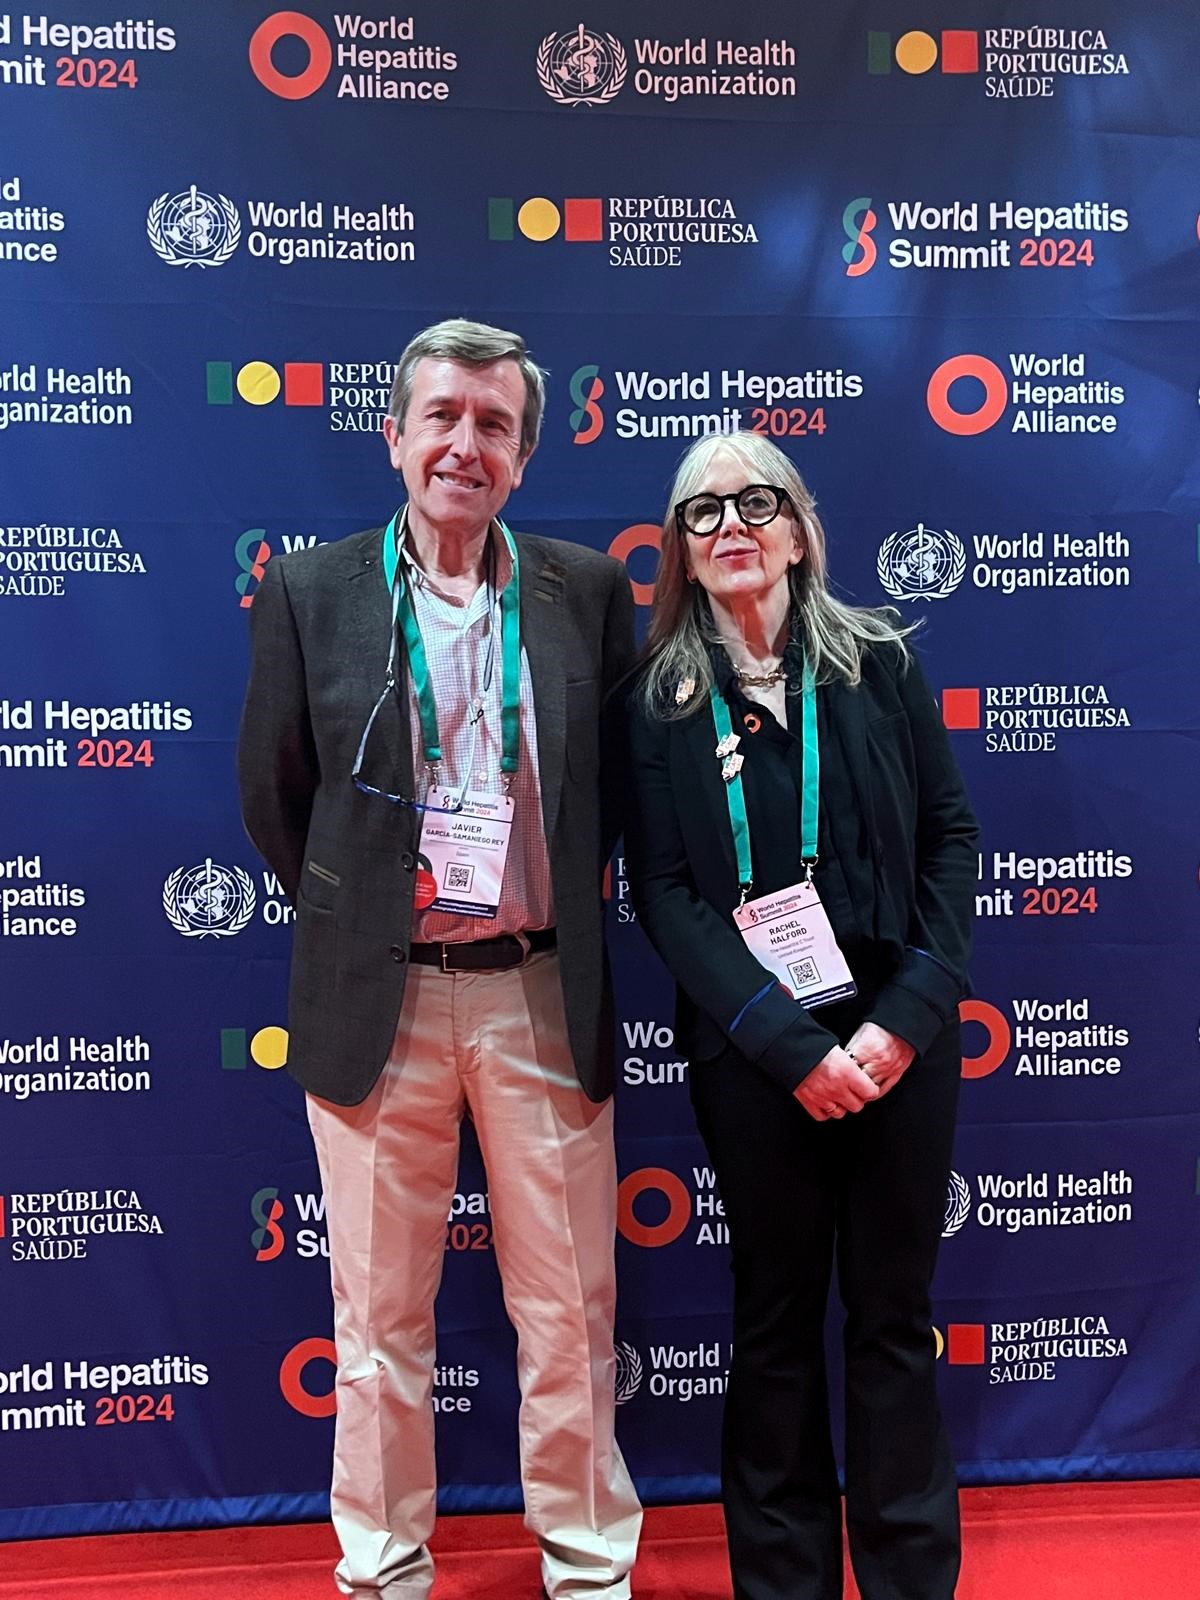 España presenta en el World Hepatitis Summit de Lisboa los resultados de #hepCityFree, un programa  que demuestra que la implicación de las ciudades es eficaz en la lucha contra la hepatitis C